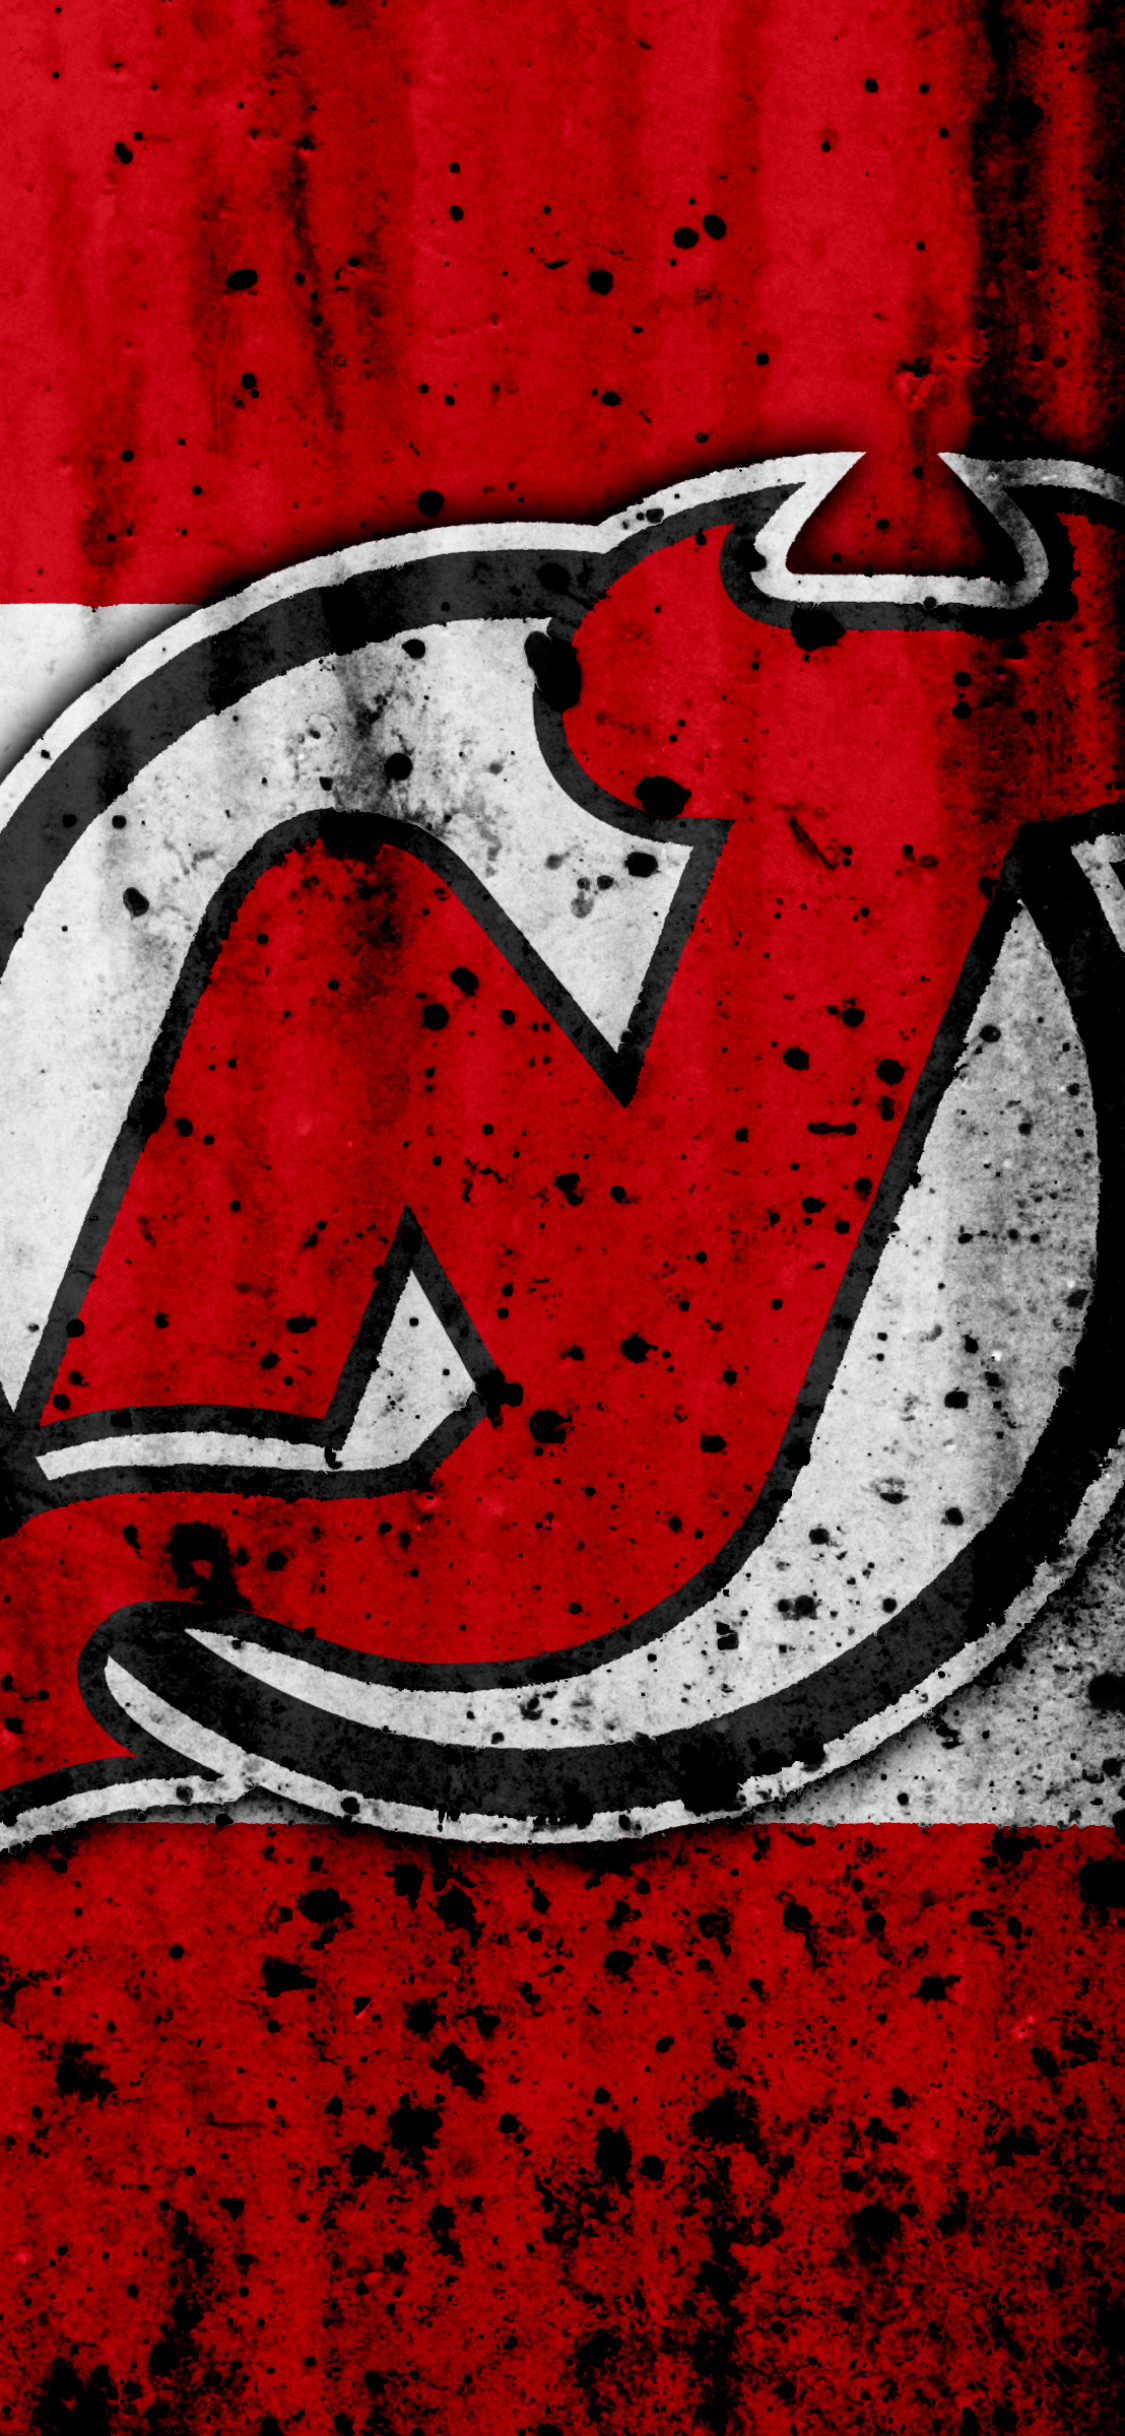 new jersey devils, sports, emblem, nhl, logo, hockey